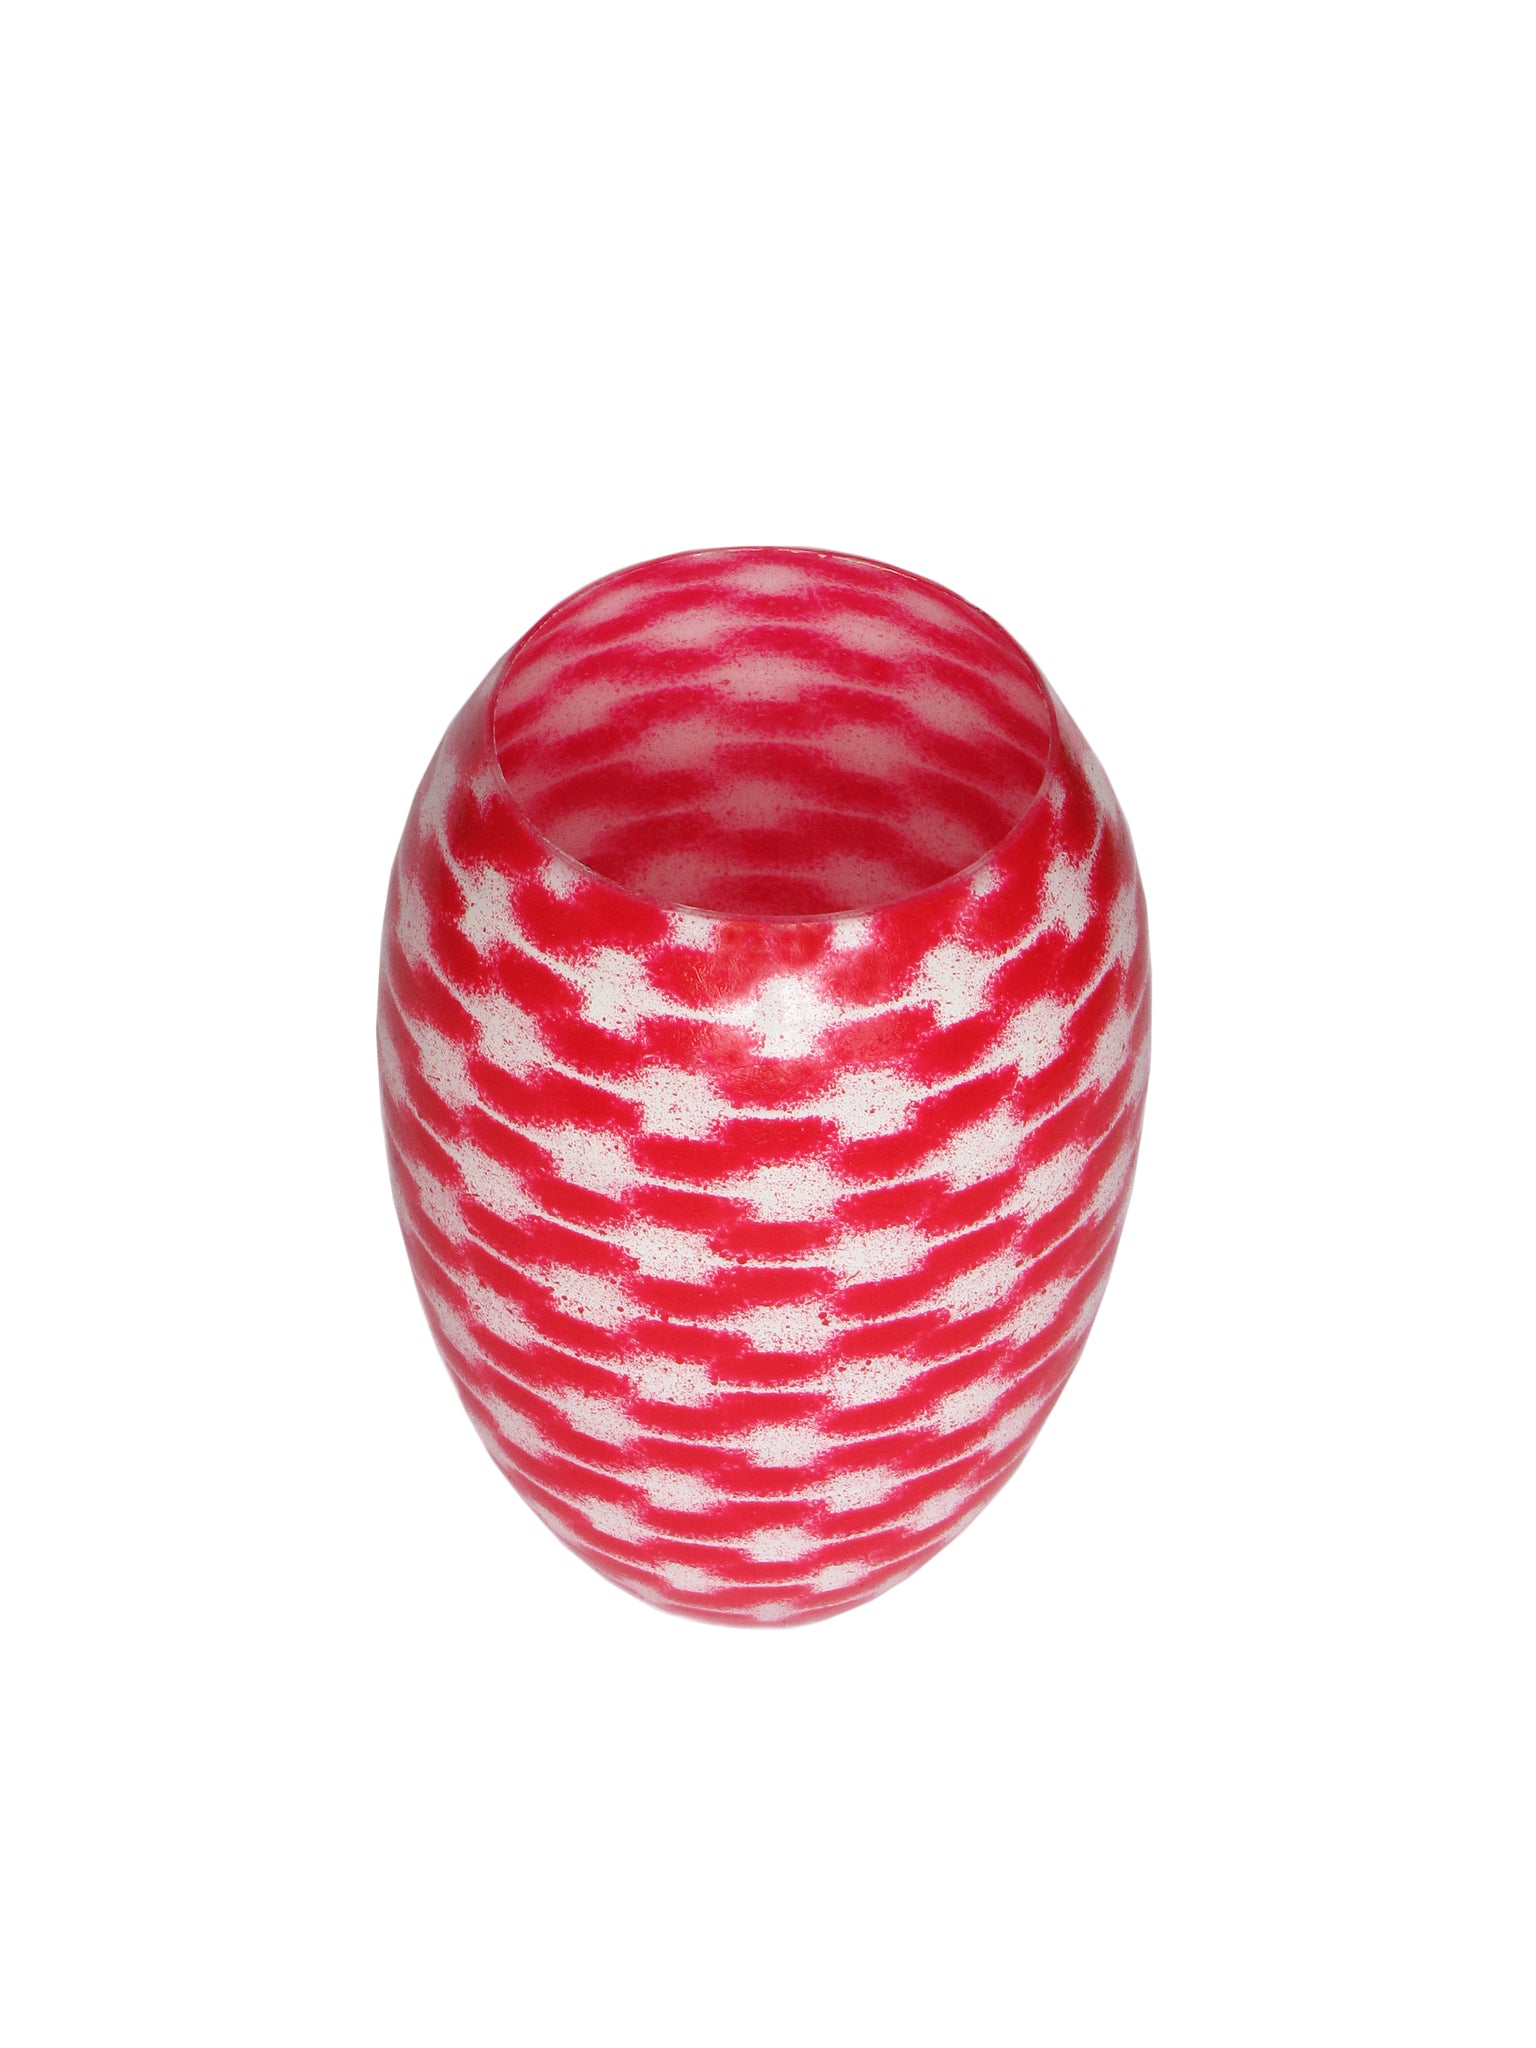 RESONANCE Barrel MED, Red & White, 18 cm / 7,1”